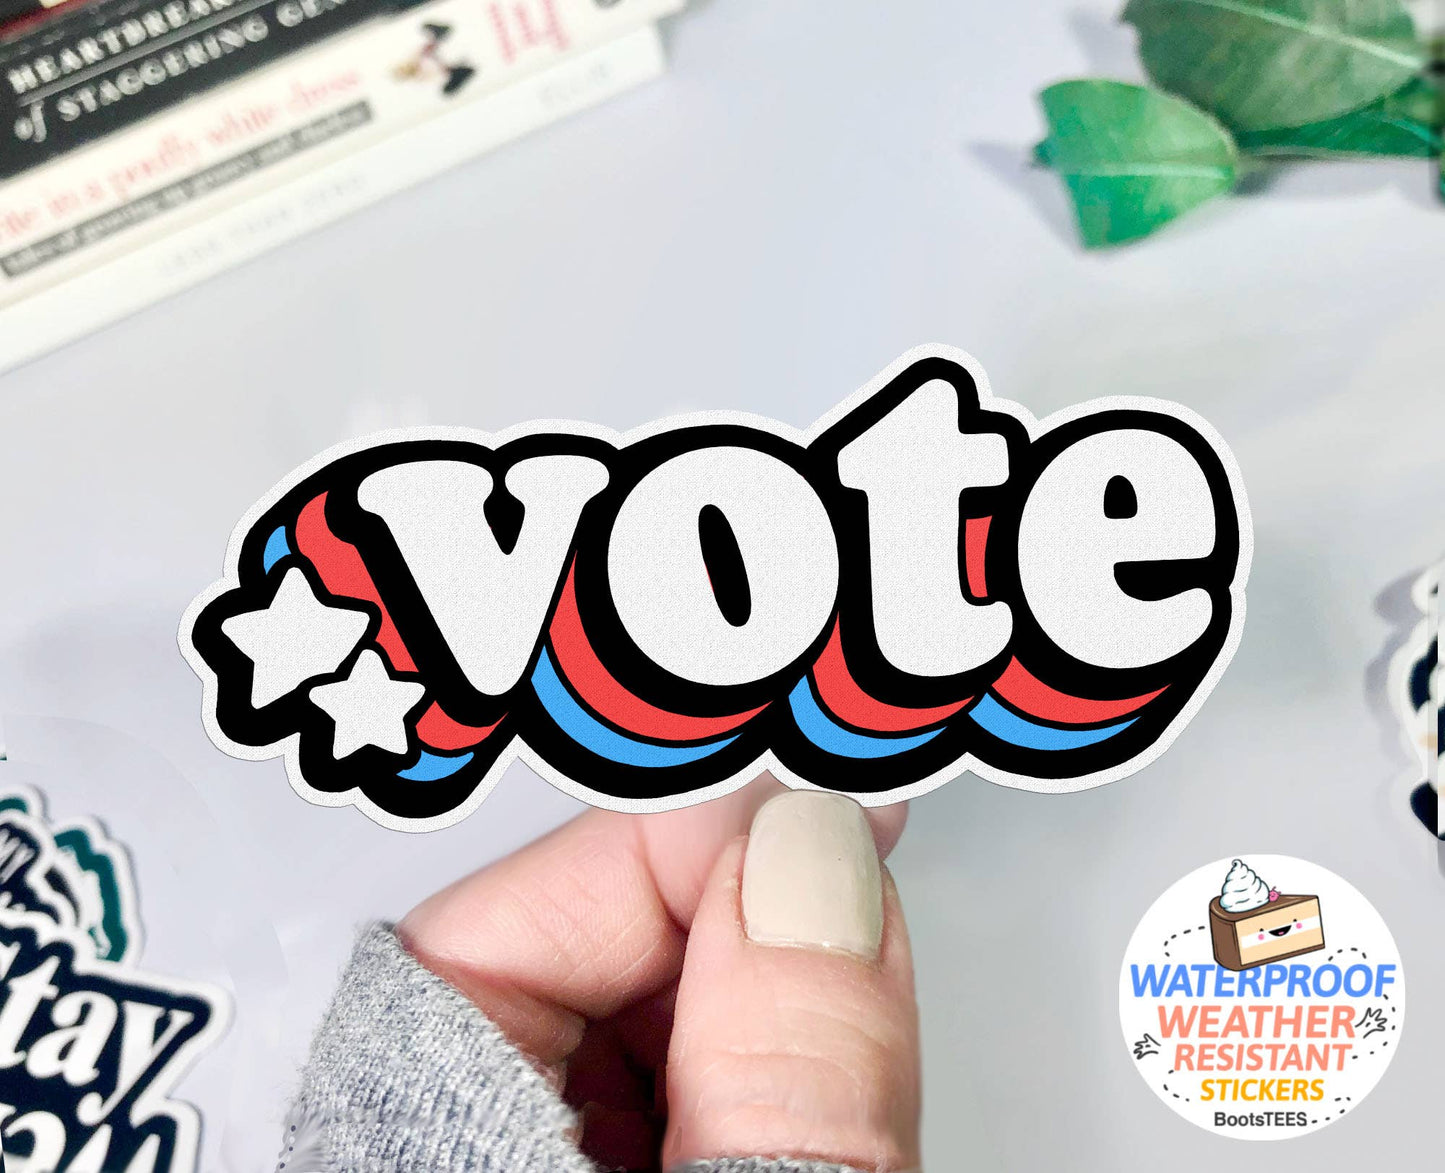 Sticker-Political-03: Retro Vote